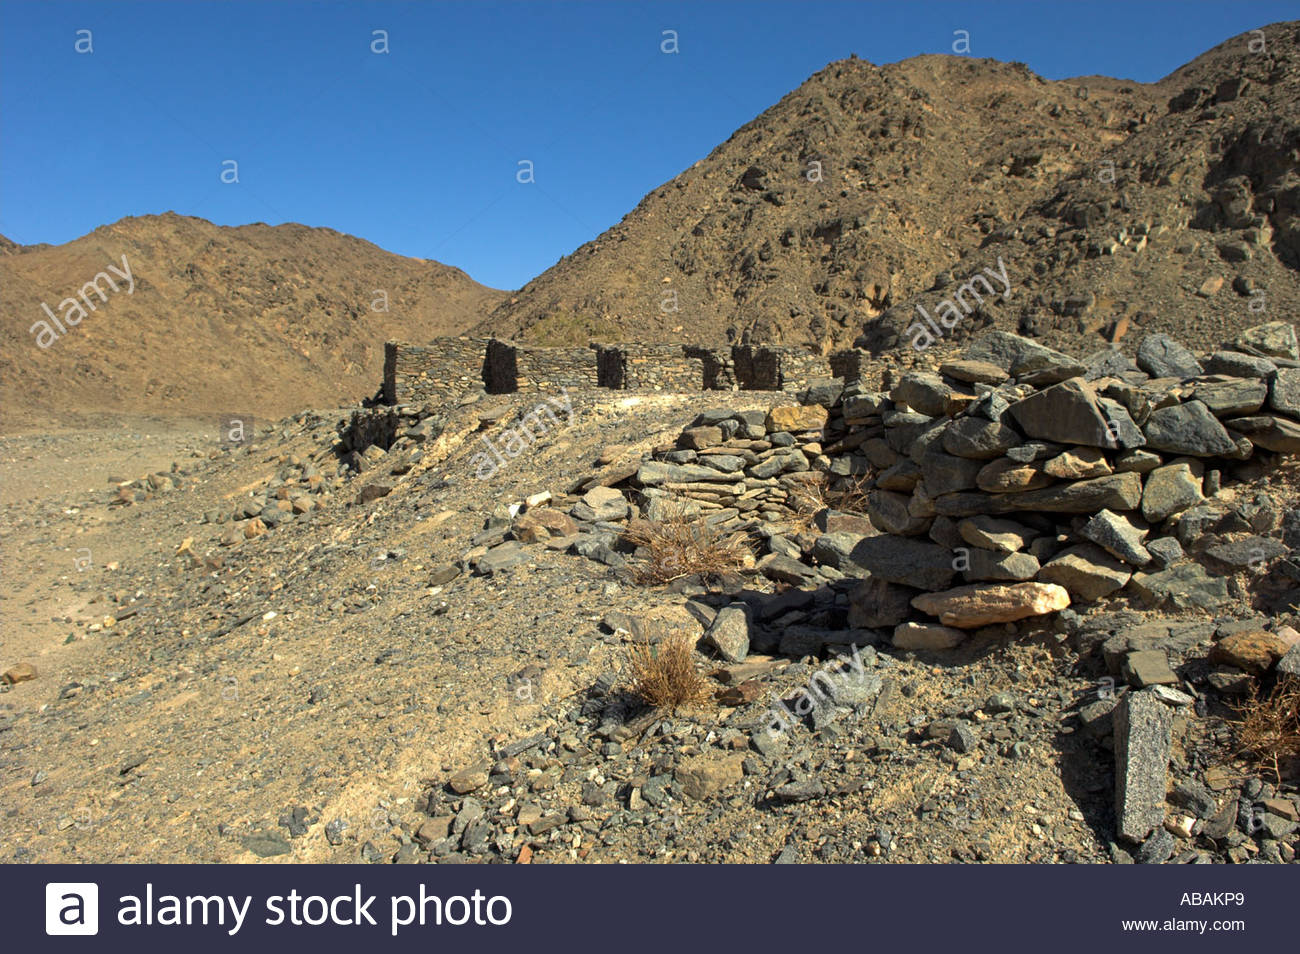 Cách bộ lạc Ababda làm du lịch tại nơi ẩn giấu những kho báu nổi tiếng thời Pharaoh - Ảnh 3.